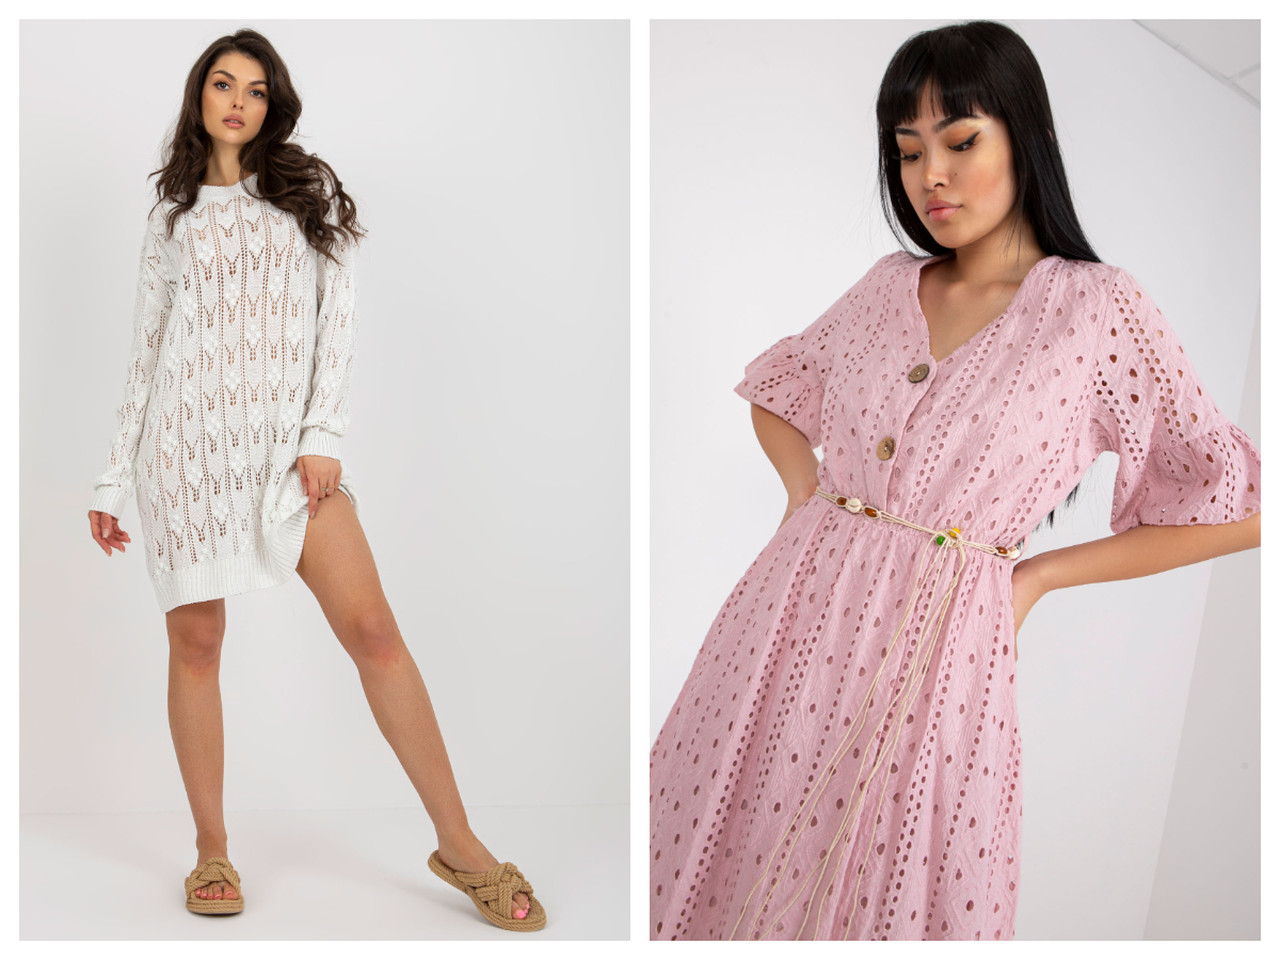 Poznaj nową kolekcję ażurowych sukienek na lato